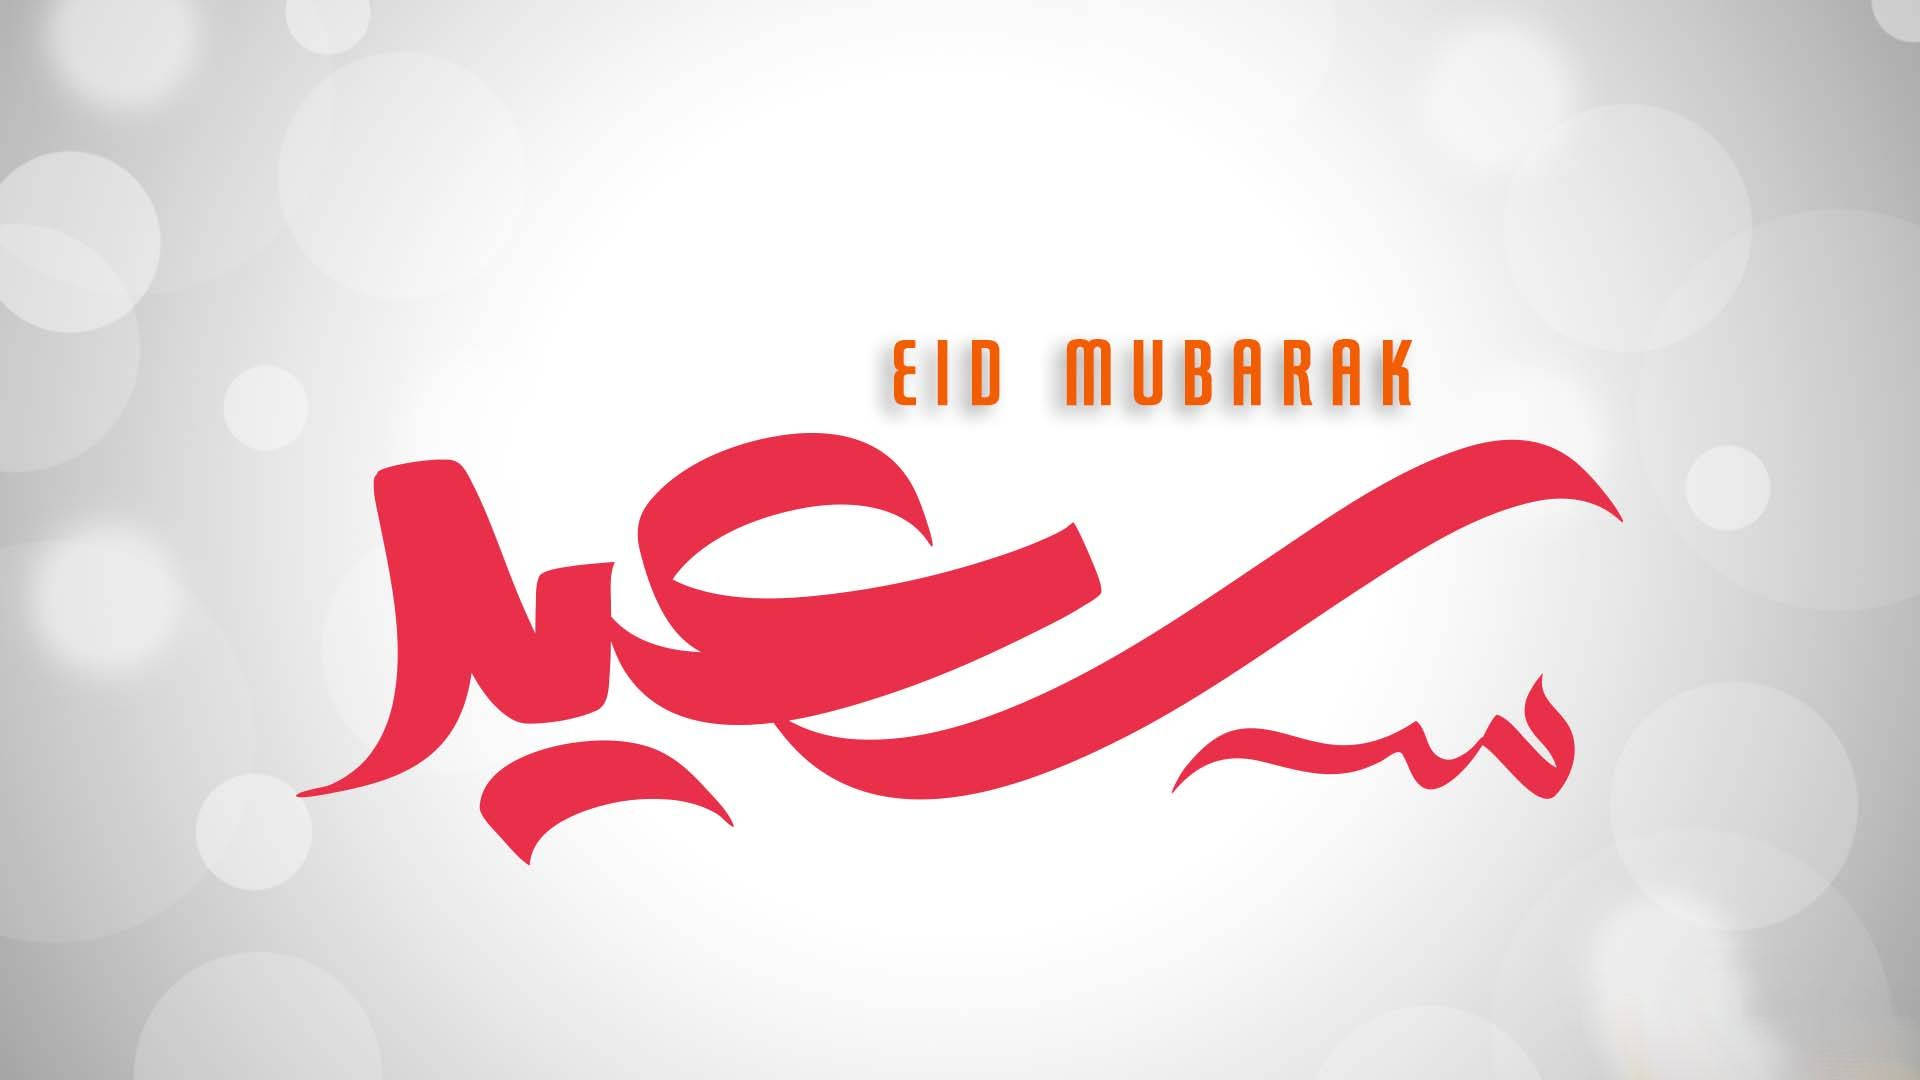 Caption: Celebrating Eid Mubarak - Stunning Evening Full Of Lights And Moon Background